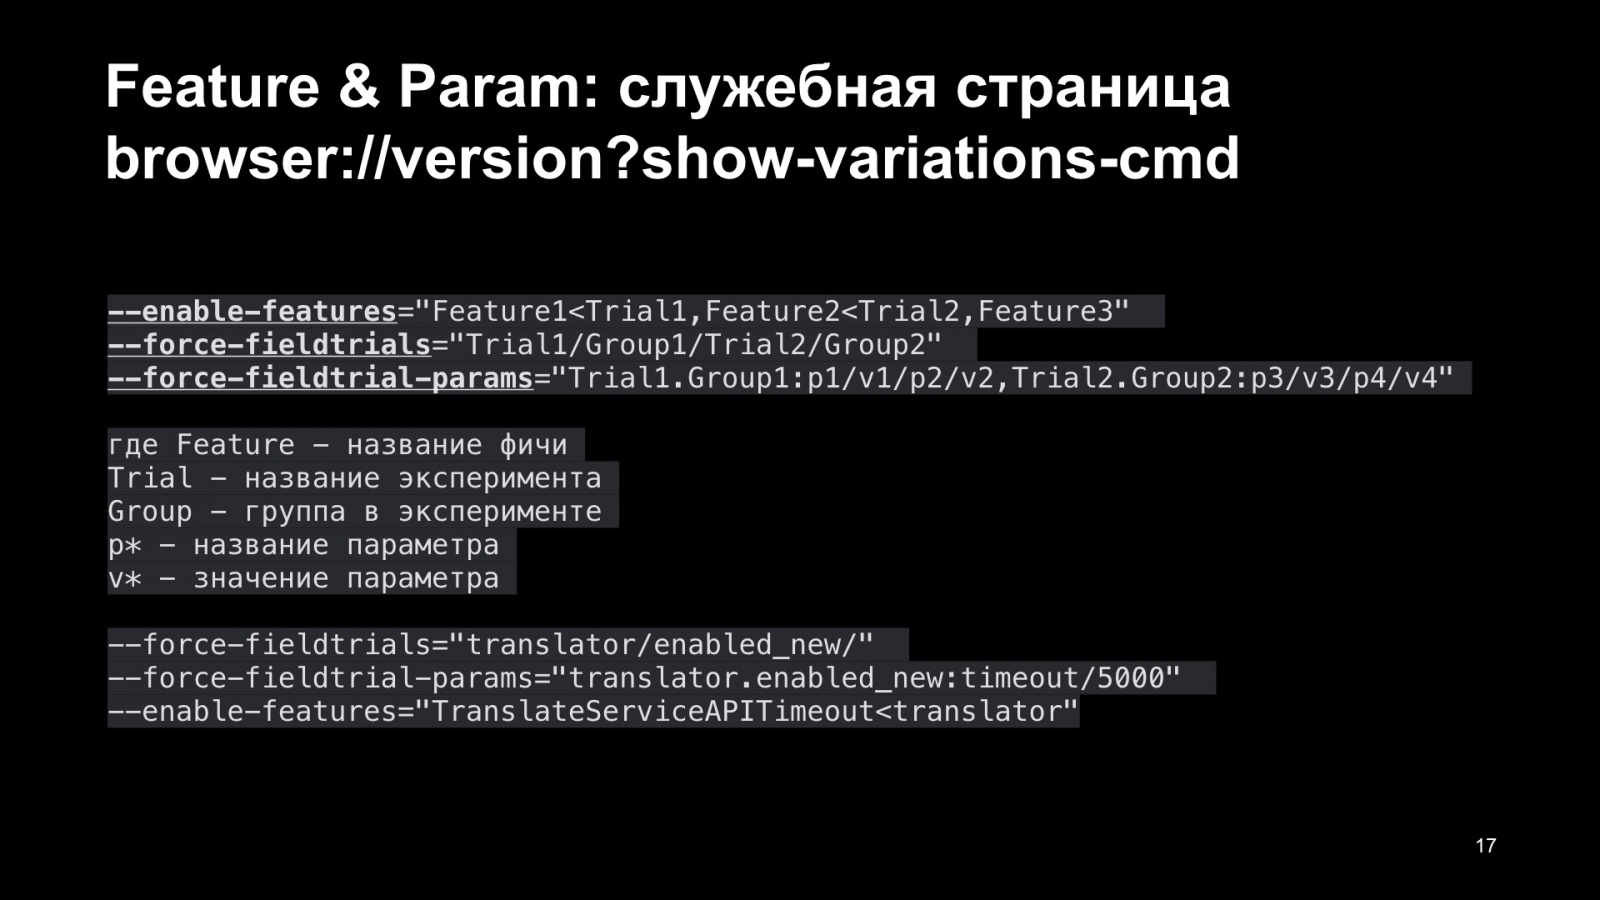 Как Браузер для iOS А-Б-тестирование улучшал. Доклад Яндекса - 18